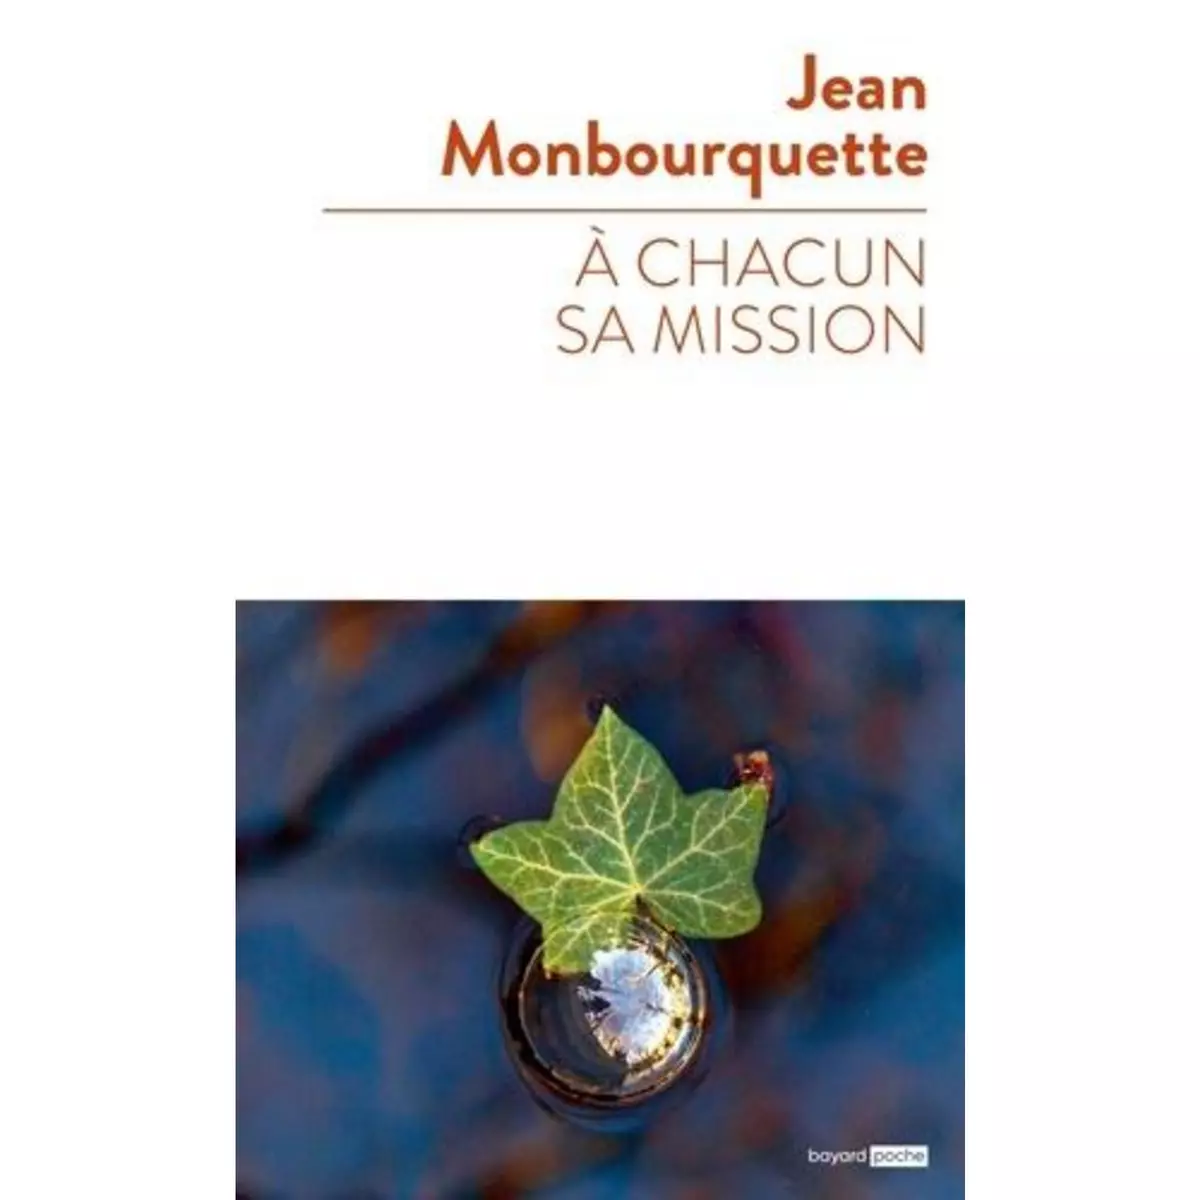  A CHACUN SA MISSION, Monbourquette Jean